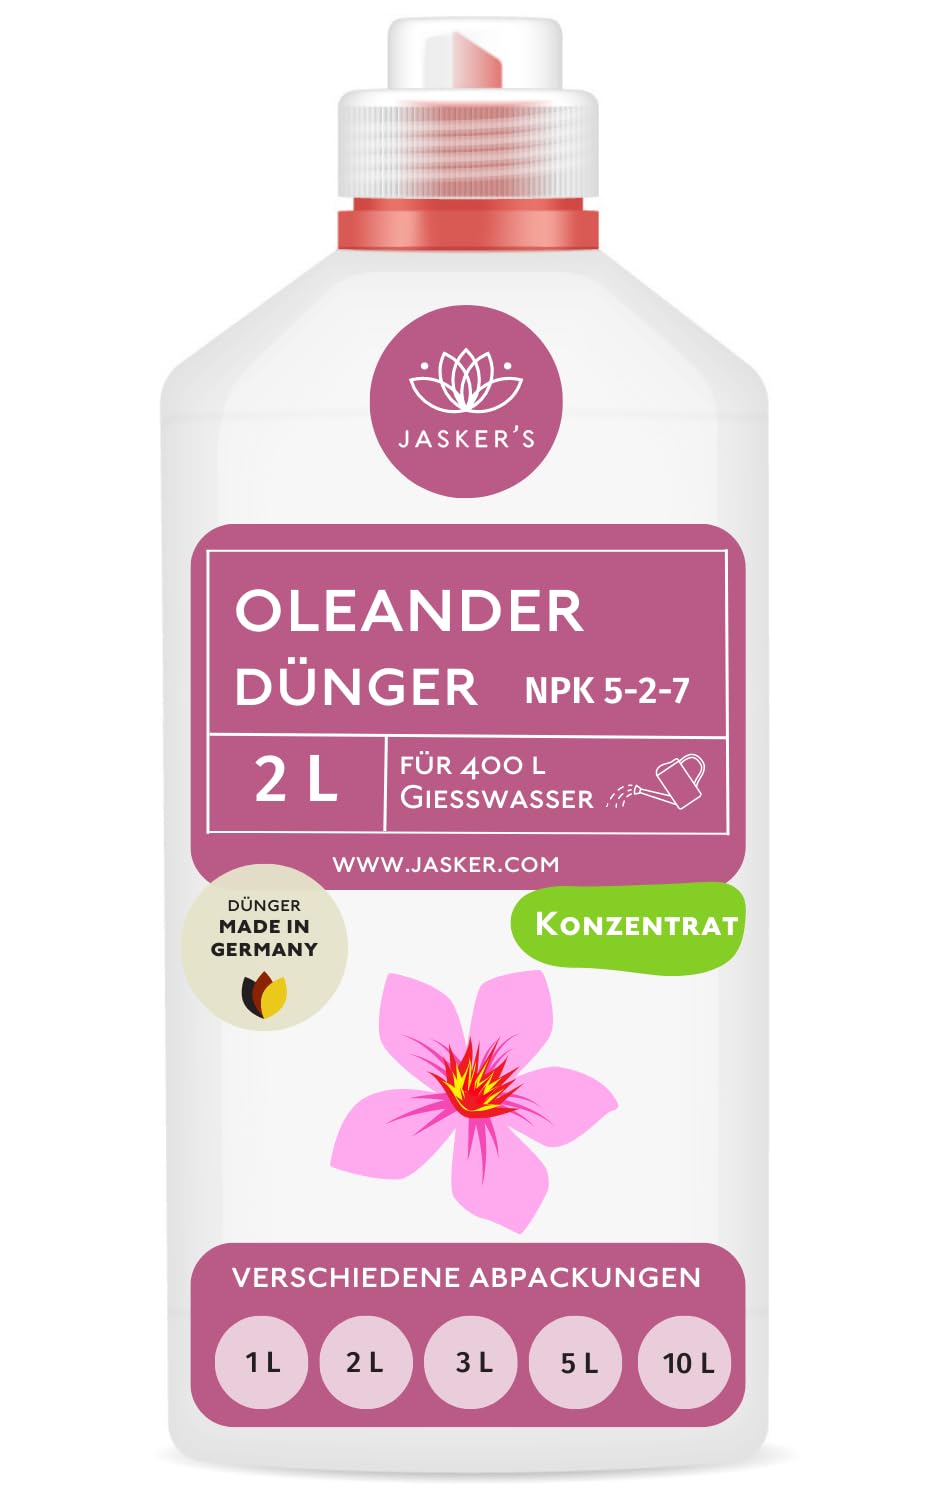 Oleander Dünger flüssig 2 Liter - Konzentrat Dünger Oleander - Mediterraner Pflanzendünger für 400 Liter Gießwasser - 100% Schnelldünger - Dünger für Oleander - Oleanderdünger